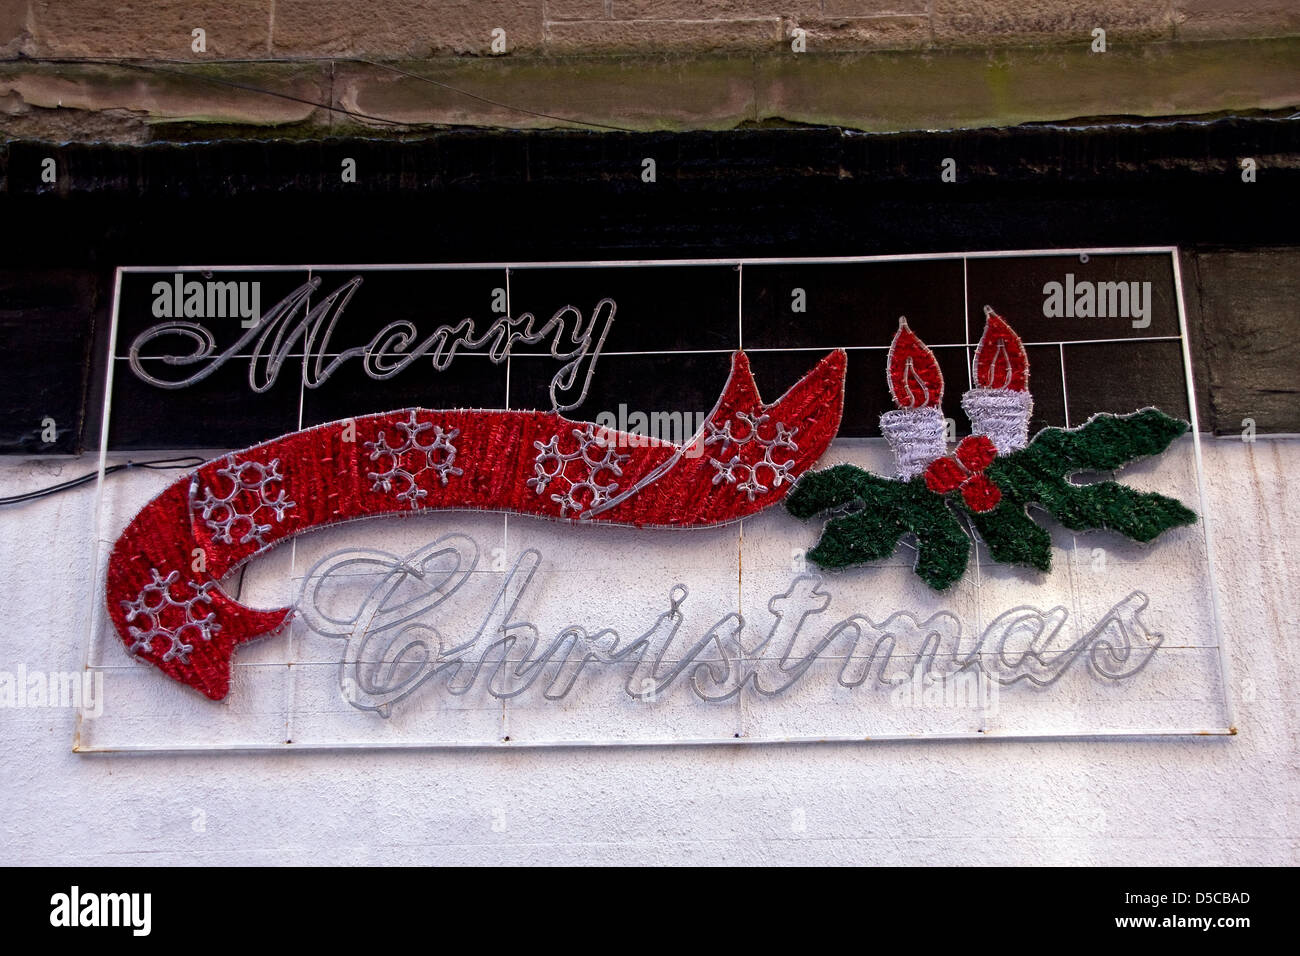 Joyeux Noël décorations encore accrochée sur un mur store Dundee à la fin mars 2013,UK Banque D'Images